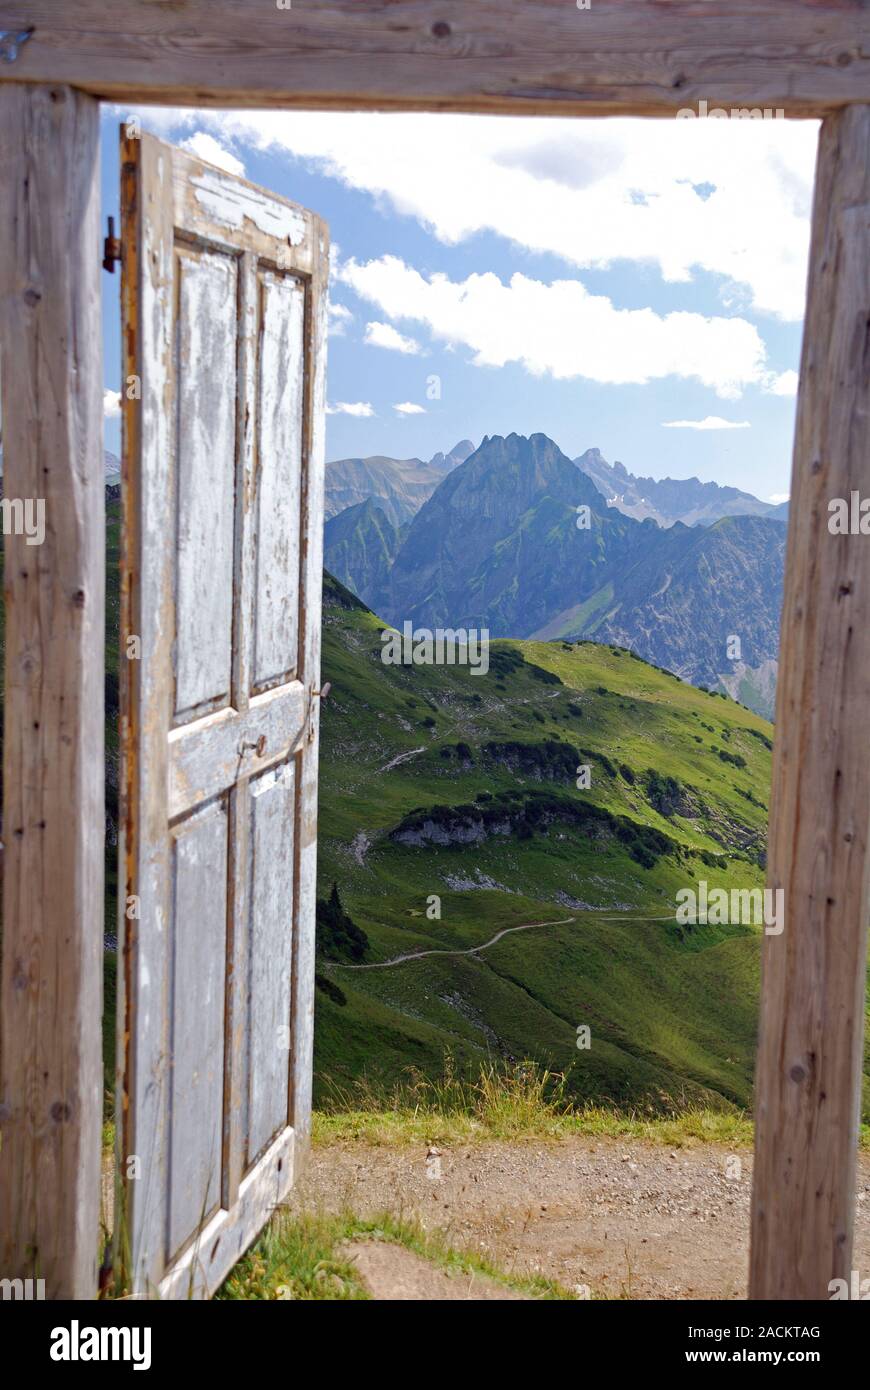 Teil der Kunst aktion öffnen die Tür zu einer anderen Welt, Porta Alpinae auf dem Zeigersattel in der Nähe von Nebelhorn Stockfoto